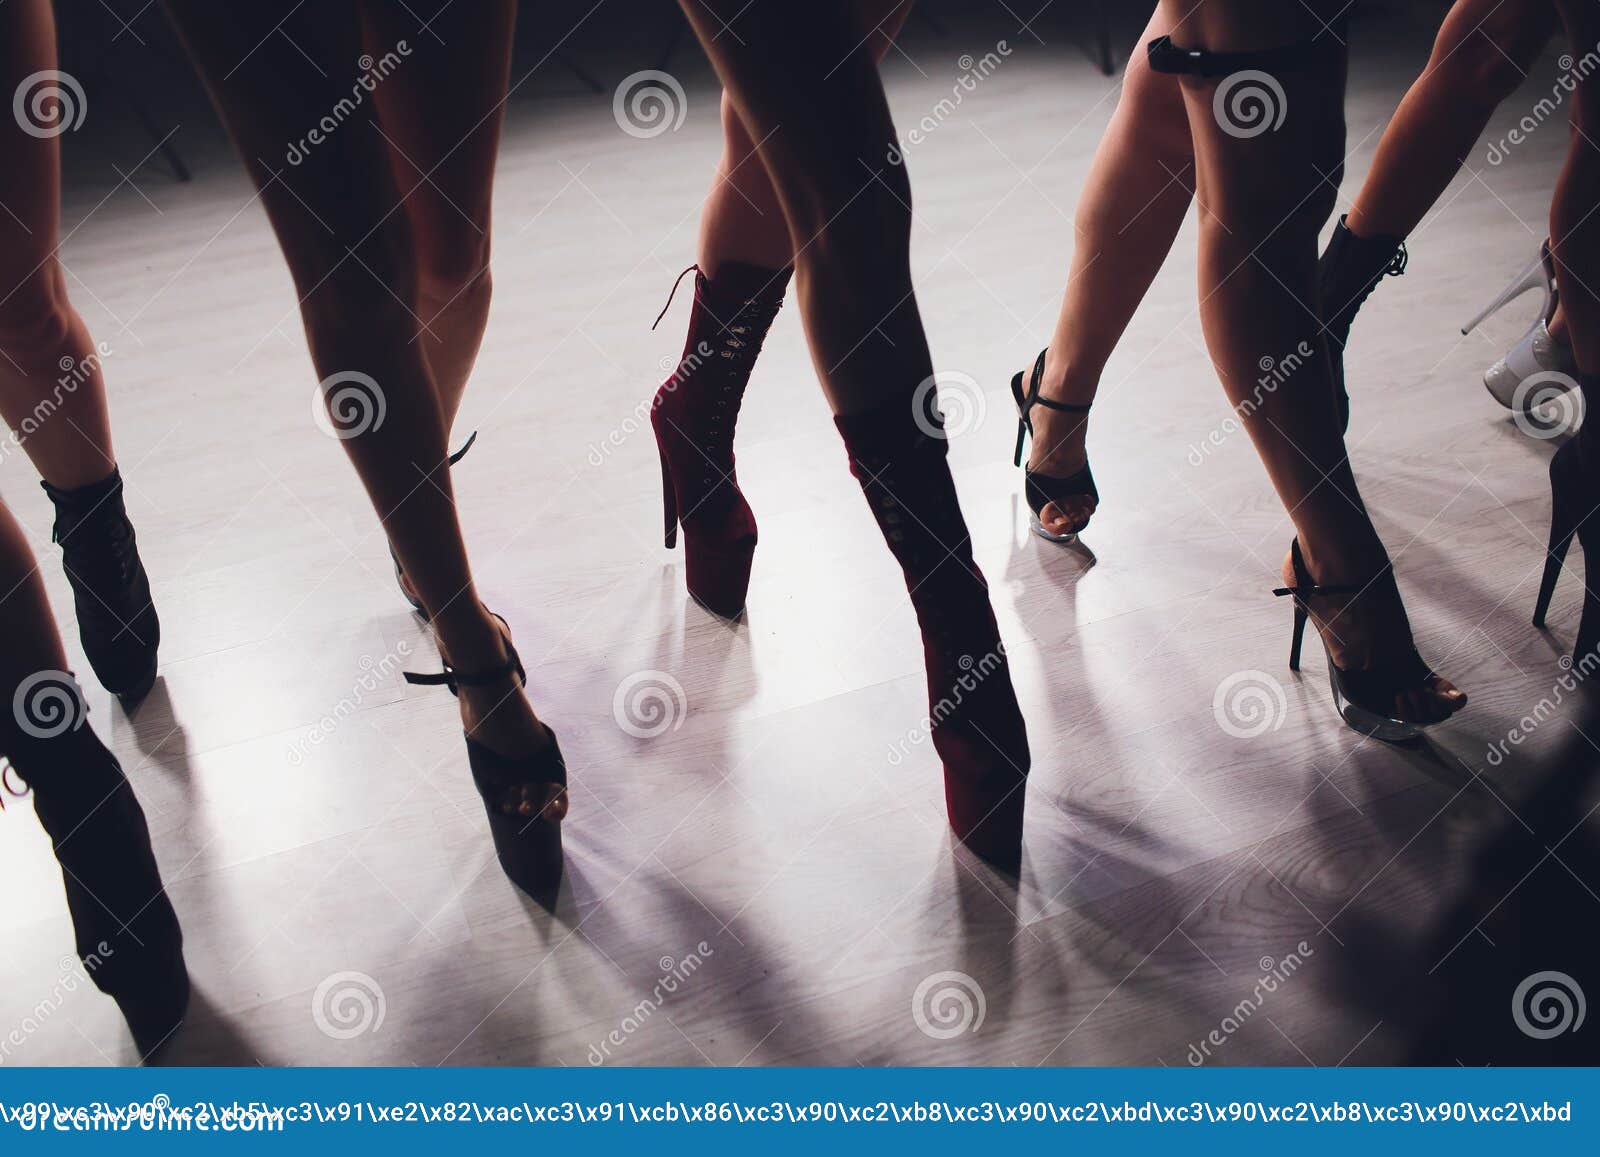 Танец на каблуках мужчины